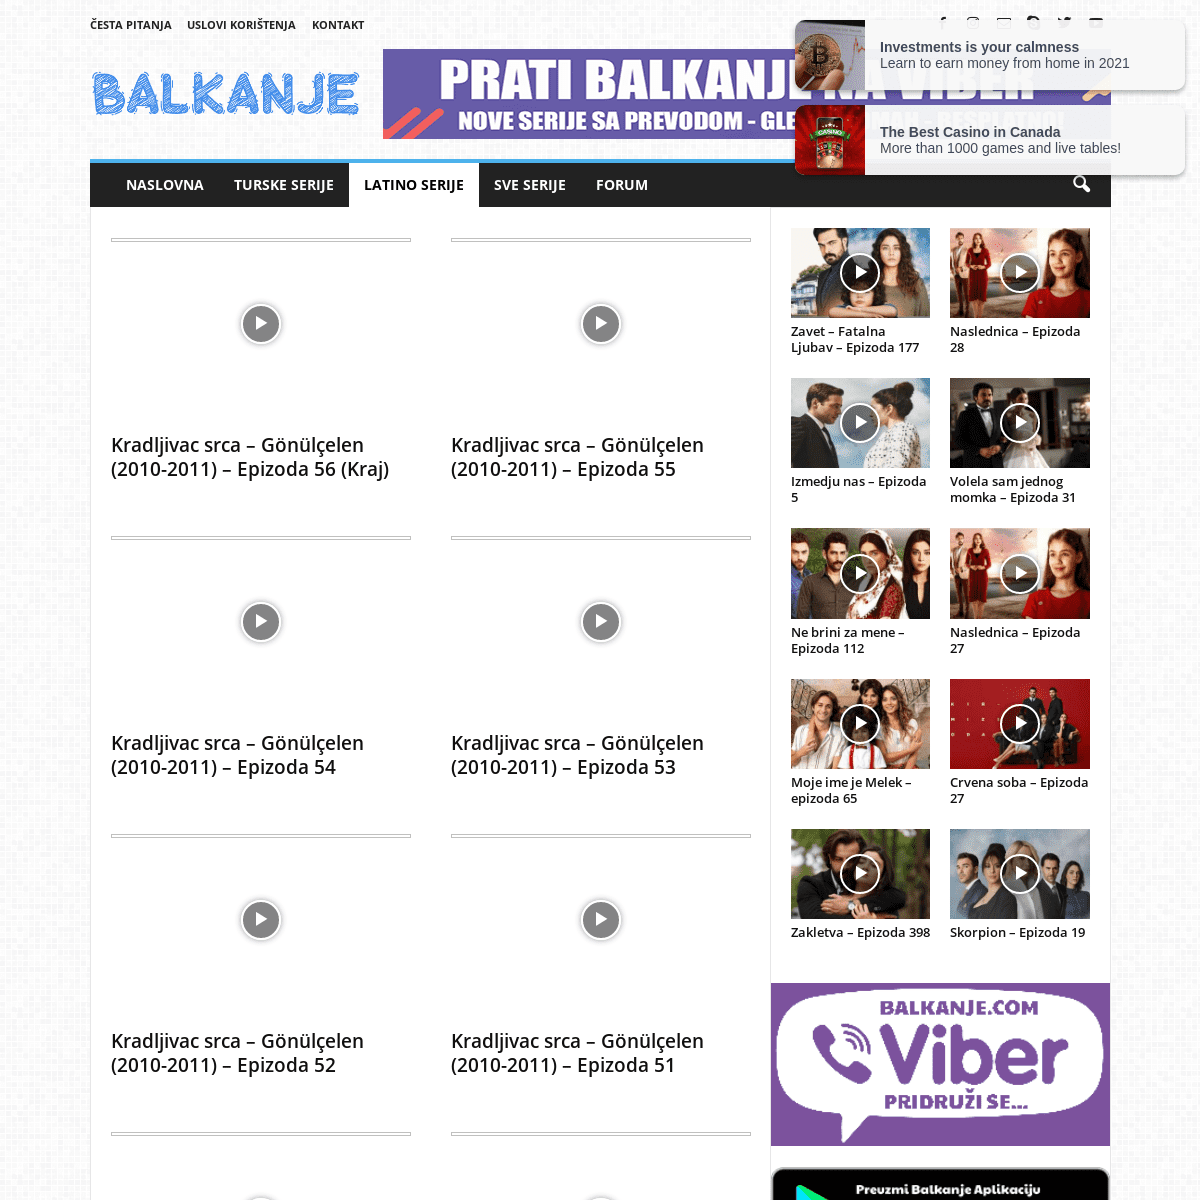 A complete backup of https://balkanje.com/latino-serije/kradljivac-srca-2010-2011/